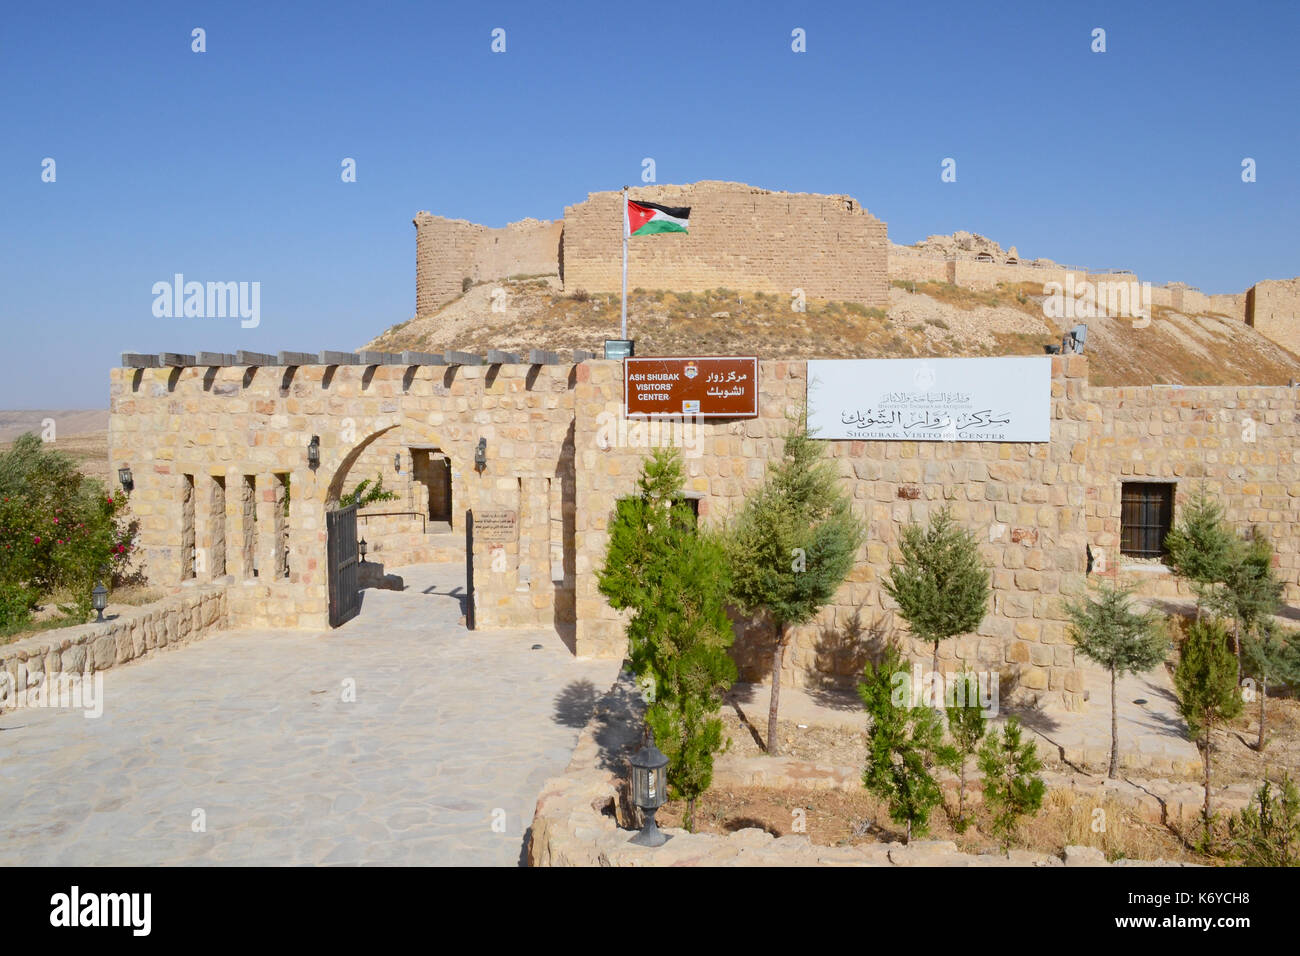 Cenere castello shubak centro visitatori ingresso, Giordania. Il castello è un popolare punto di sosta sulla strada per Petra. Foto Stock